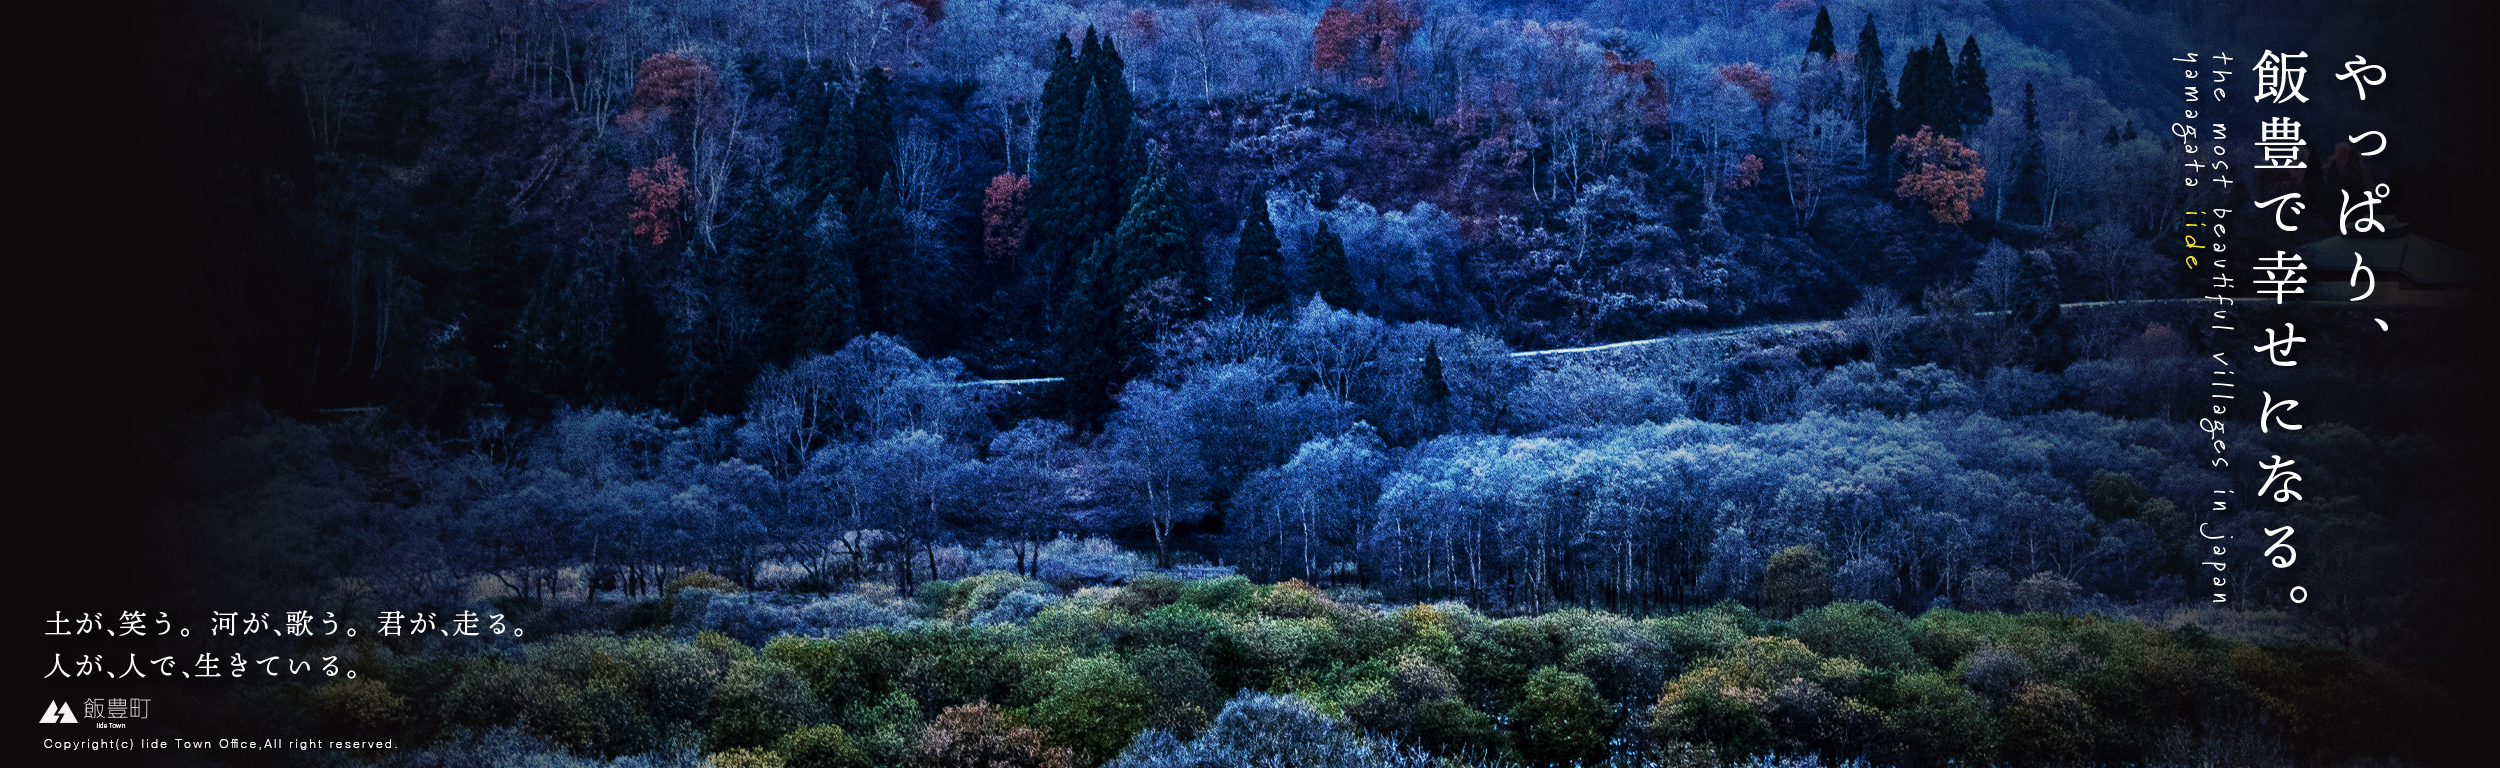 スポーツ ベット カジノ
山の風景スライドバナー画像